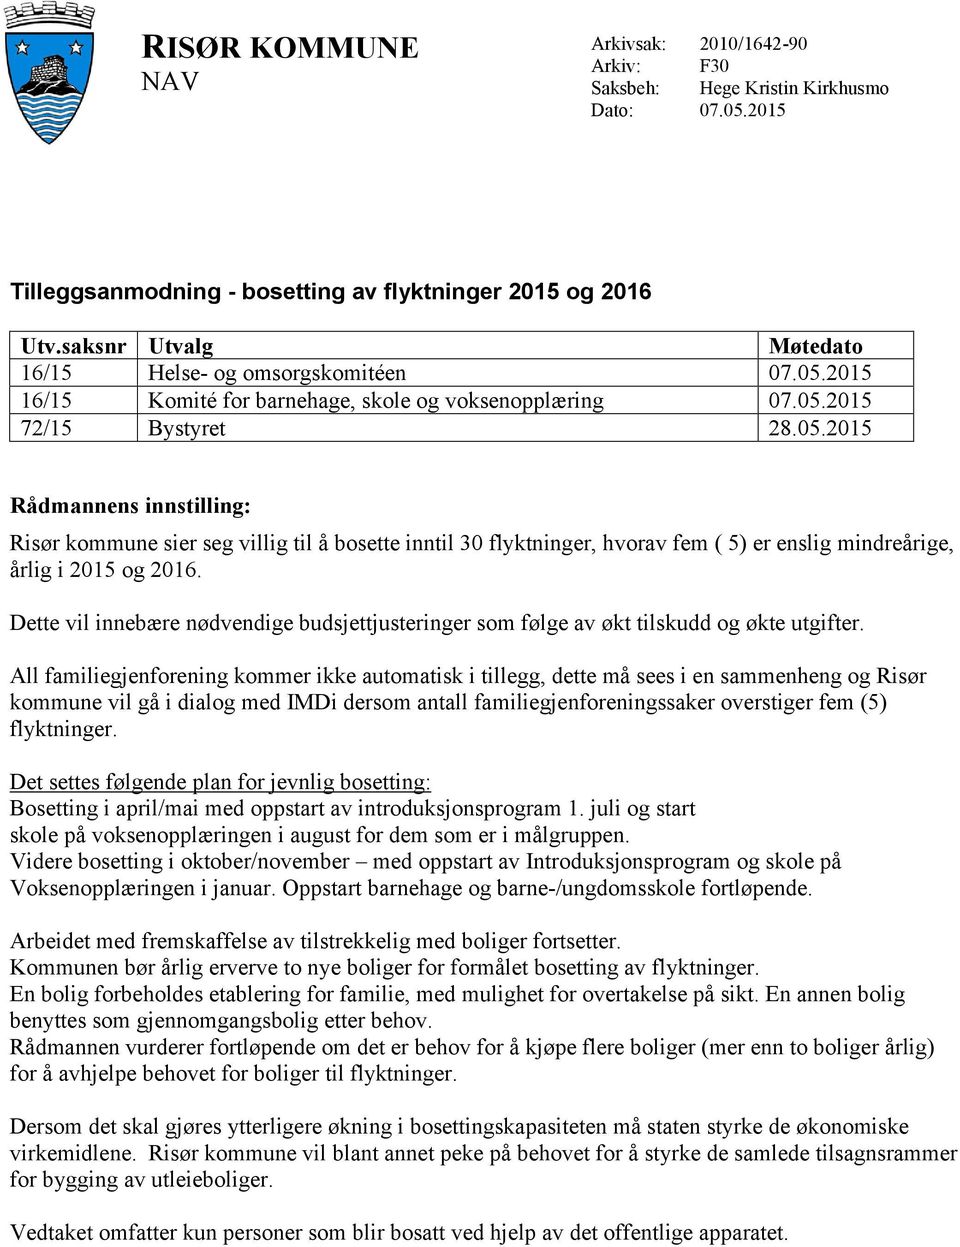 2015 16/15 Komité for barnehage, skole og voksenopplæring 07.05.